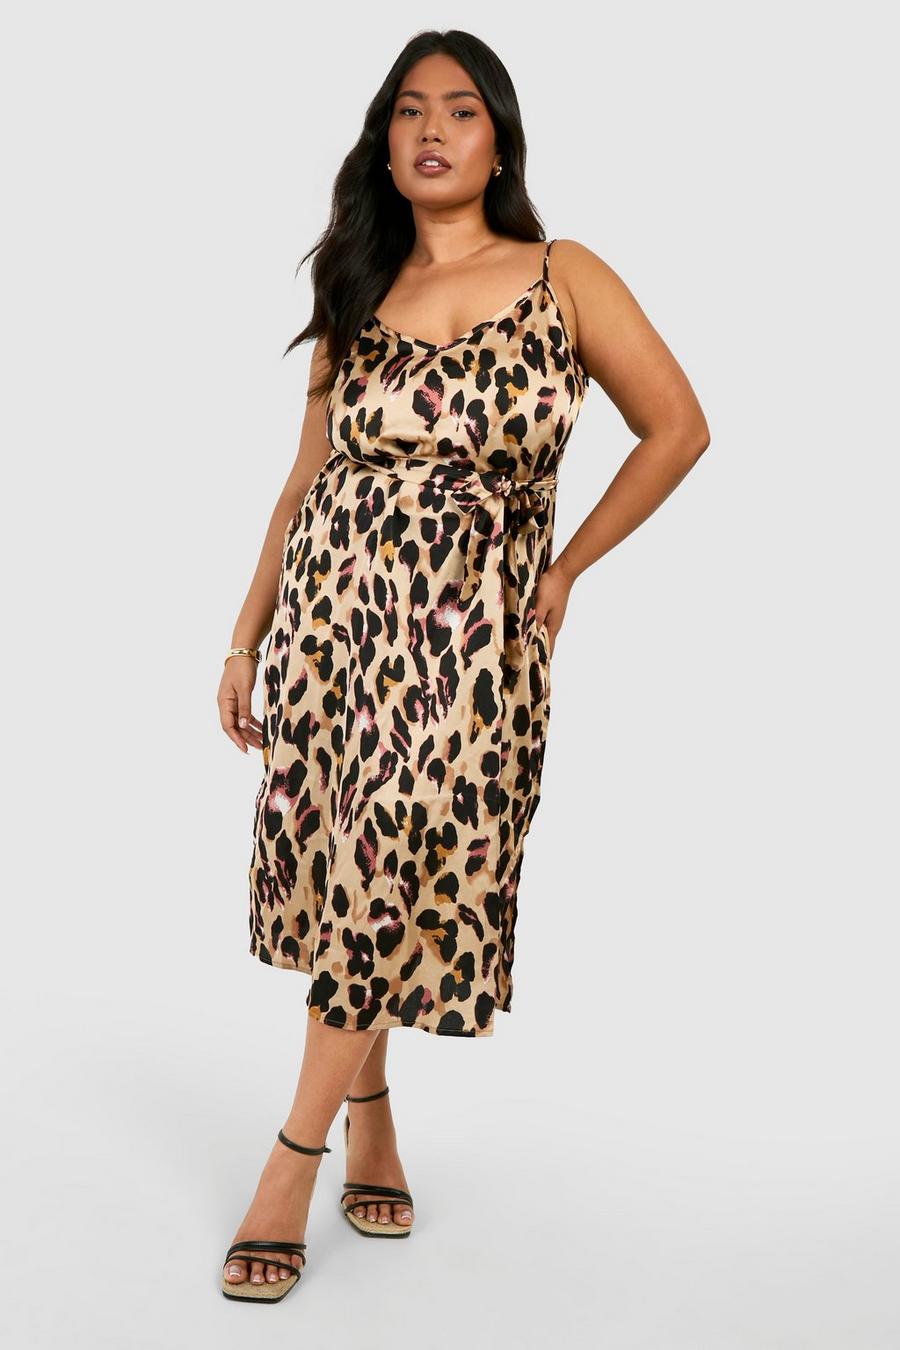 affældige det er alt Få Plus Libby Leopard Print Strappy Midi Dress | boohoo